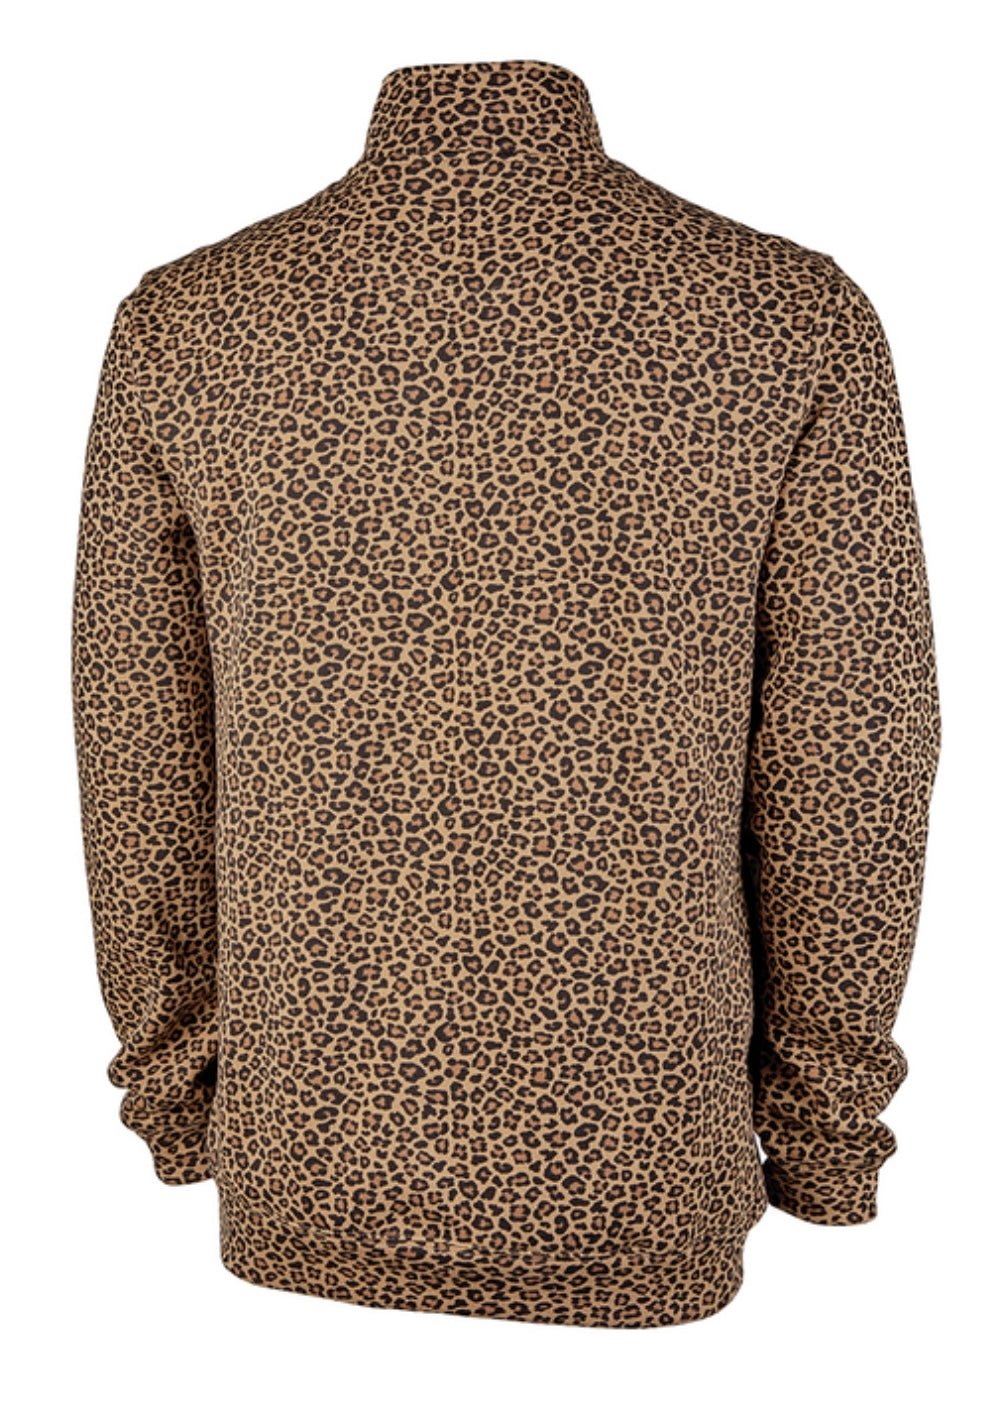 Crosswind 1/4 Zip Sweatshirt - Leopard - Quarter Zip Pullover - Jimberly's Boutique